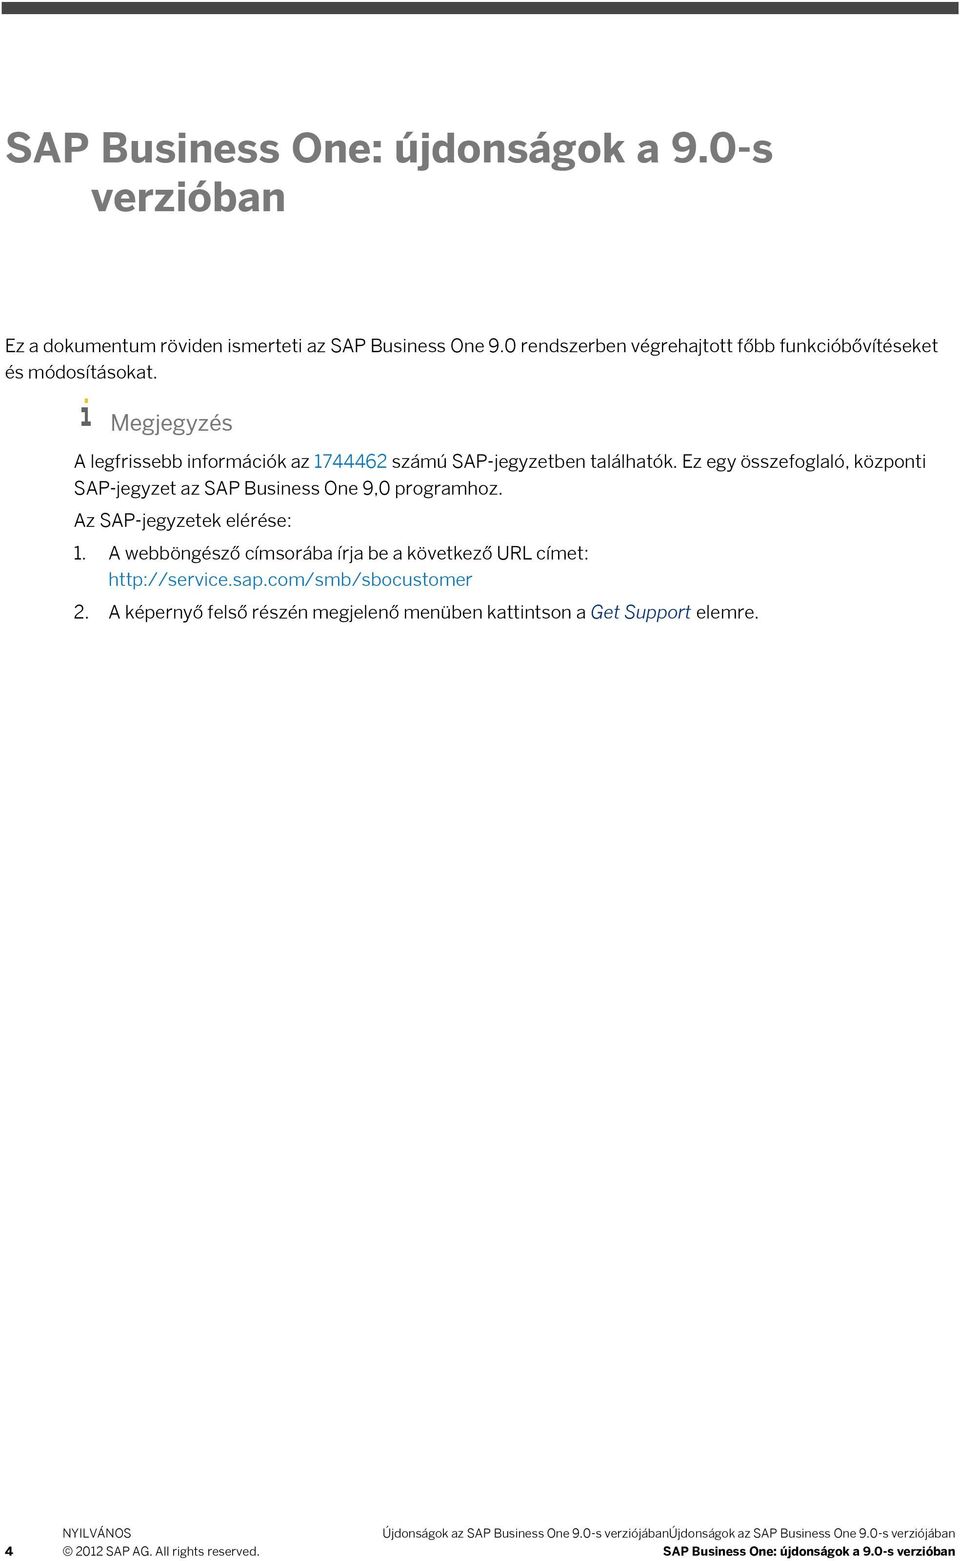 Az SAP-jegyzetek elérése: 1. A webböngésző címsorába írja be a következő URL címet: http://service.sap.com/smb/sbocustomer 2.